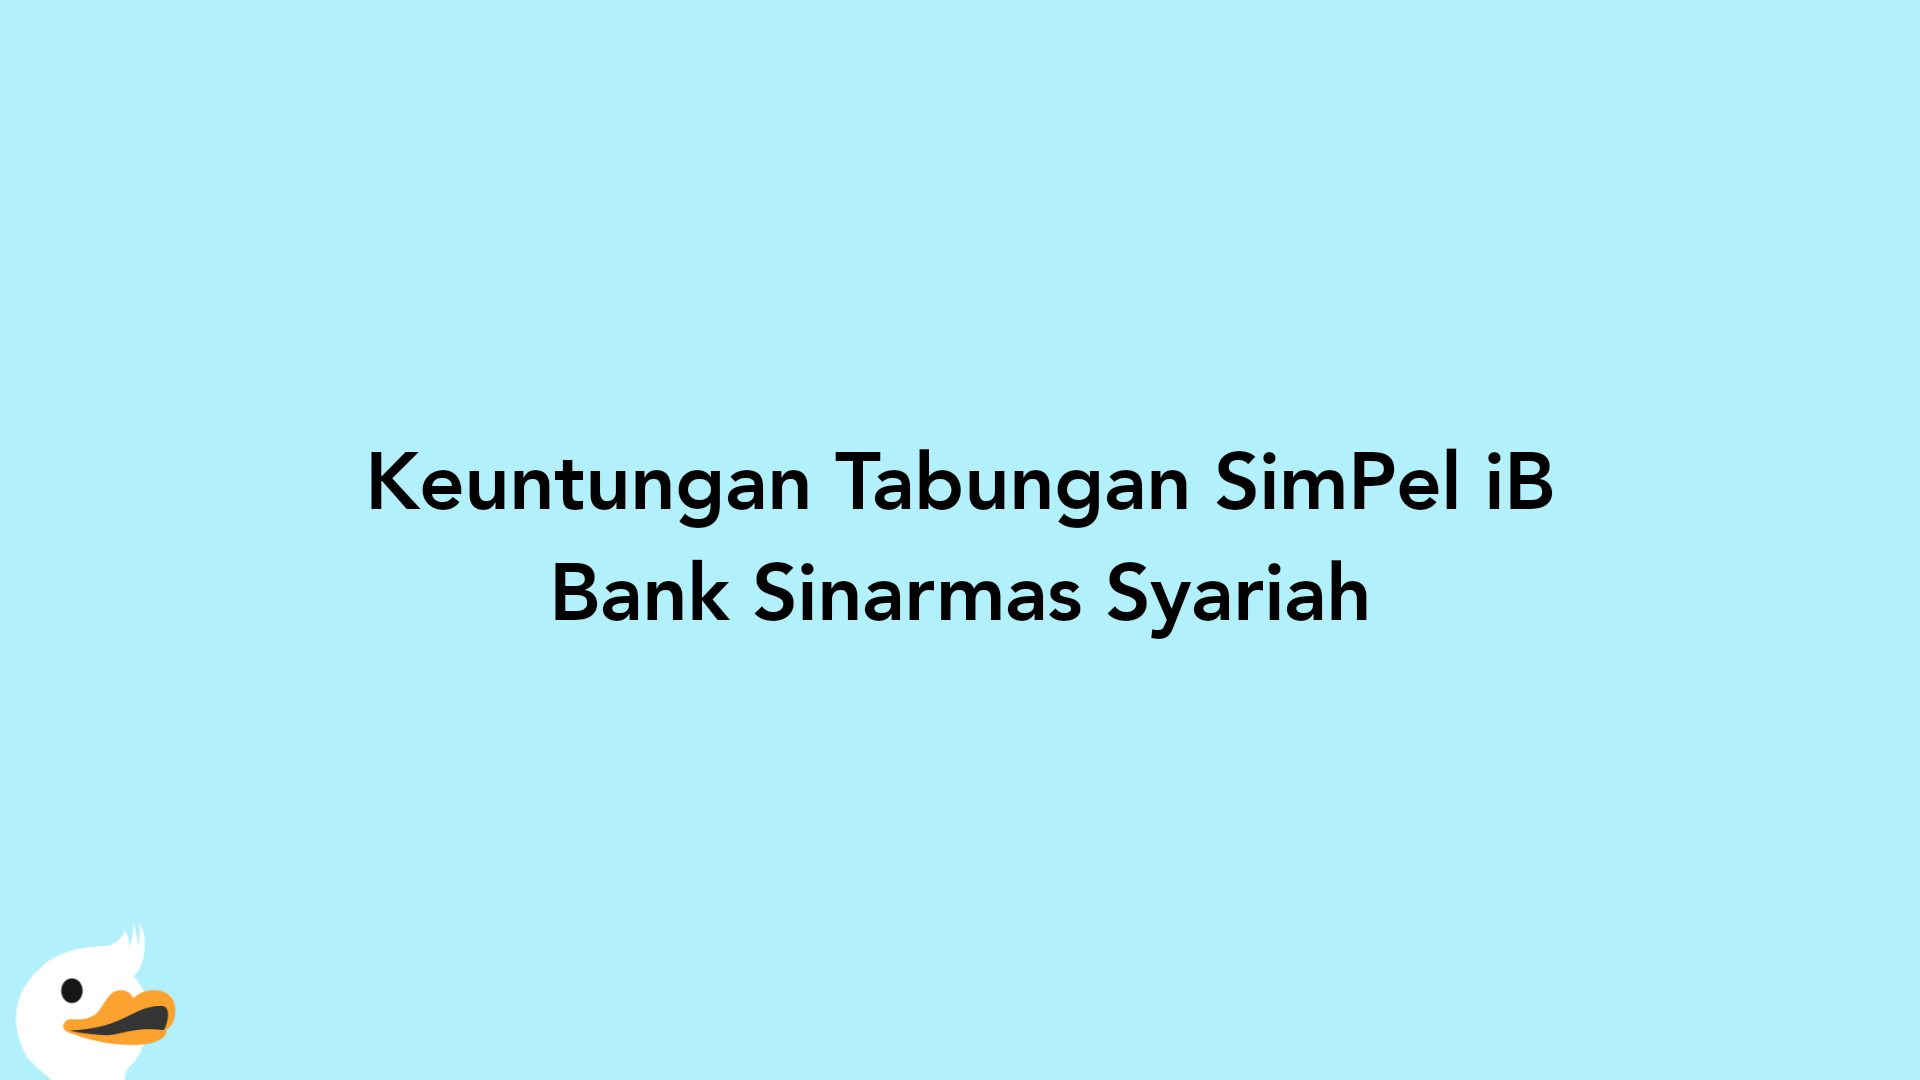 Keuntungan Tabungan SimPel iB Bank Sinarmas Syariah